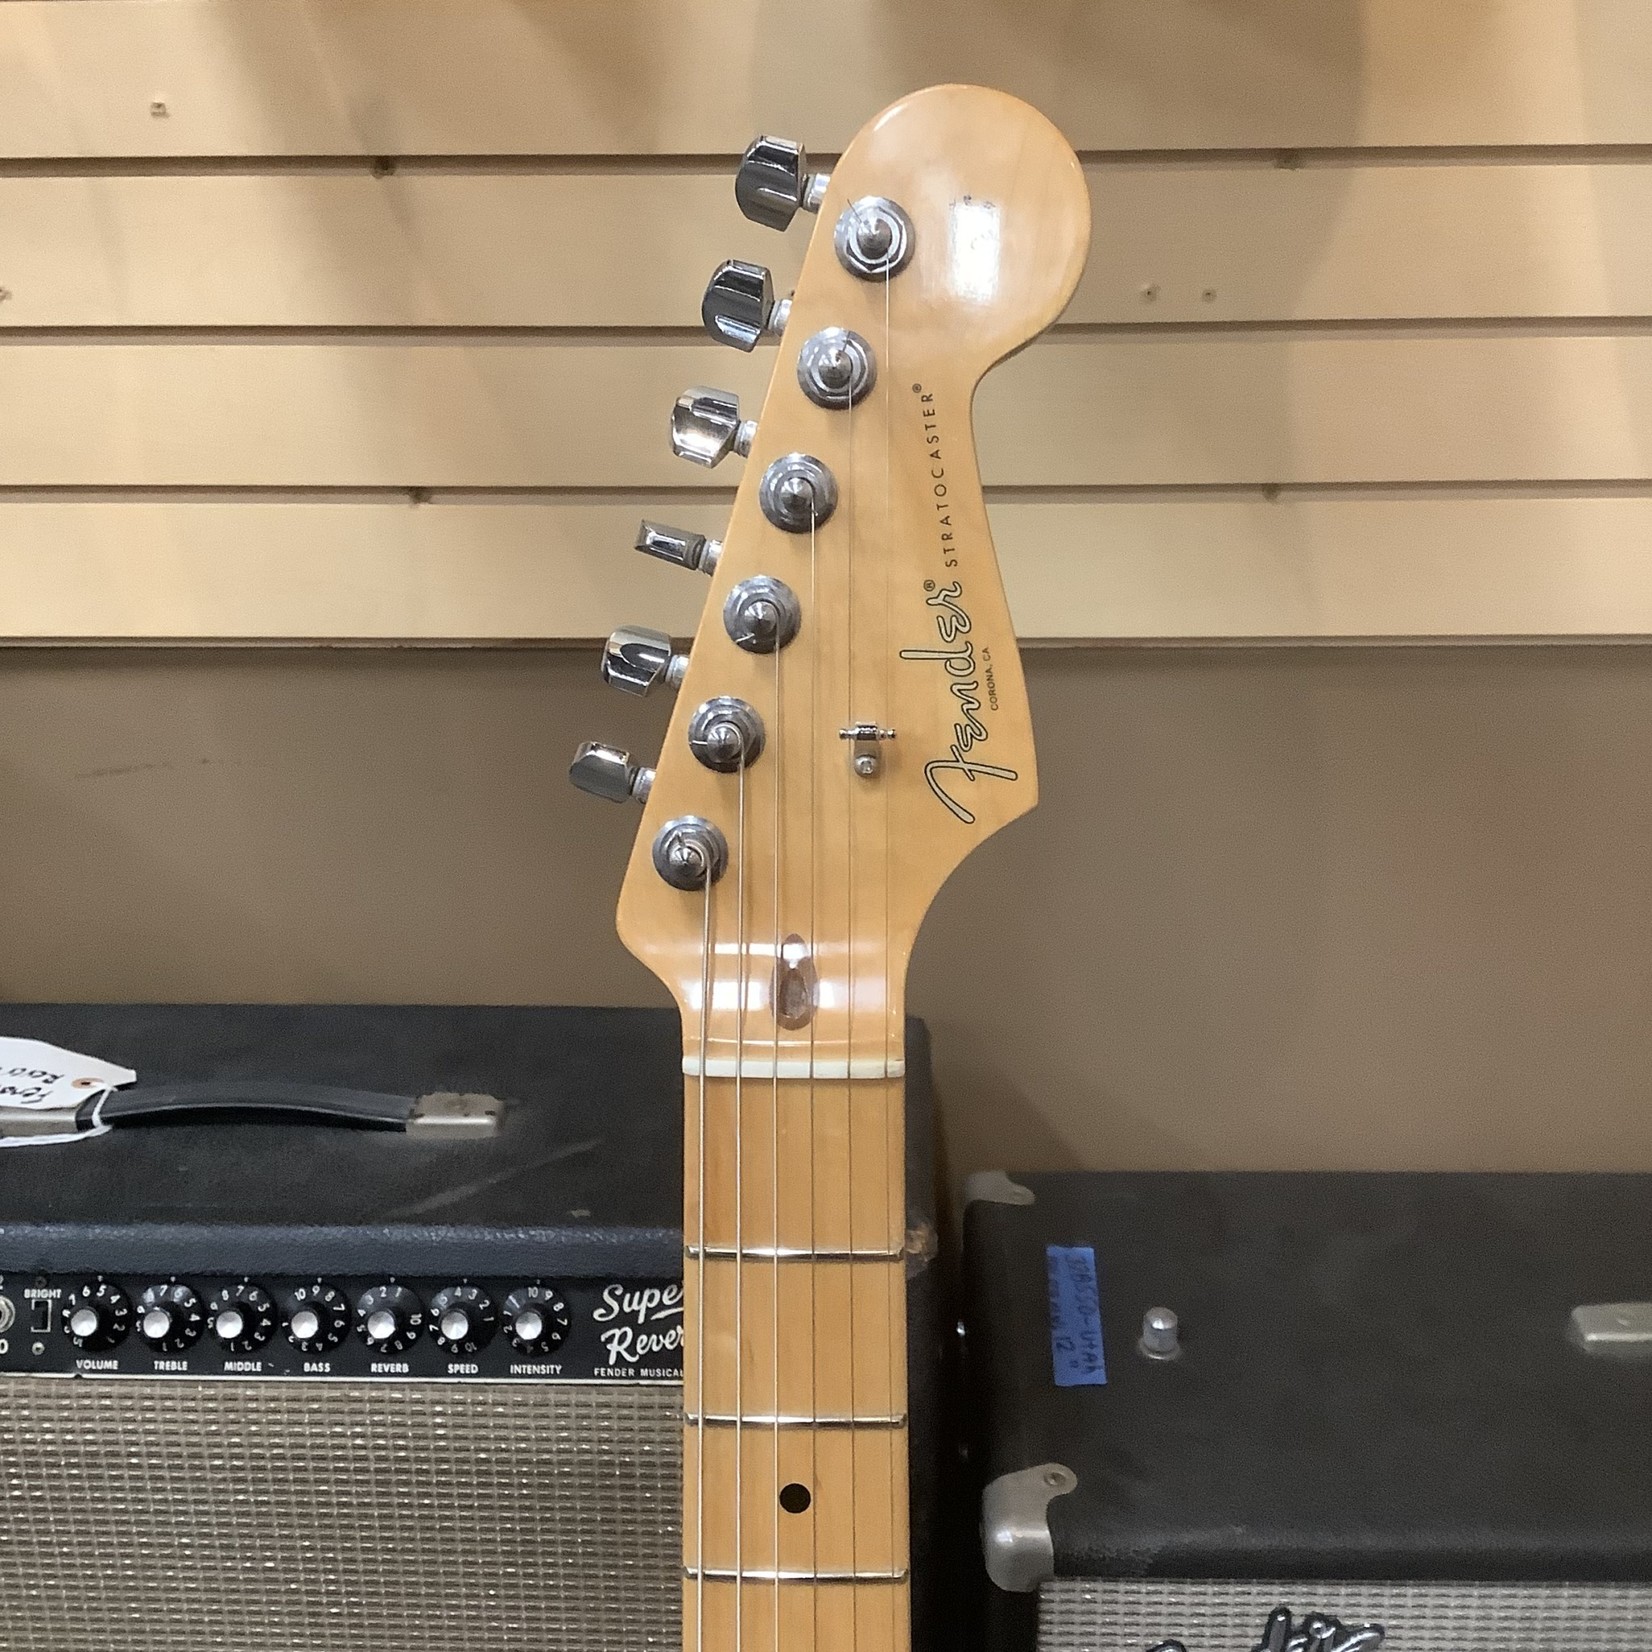 Fender 2016 Fender Stratocaster 3-Tone Sunburst Maple Fingerboard